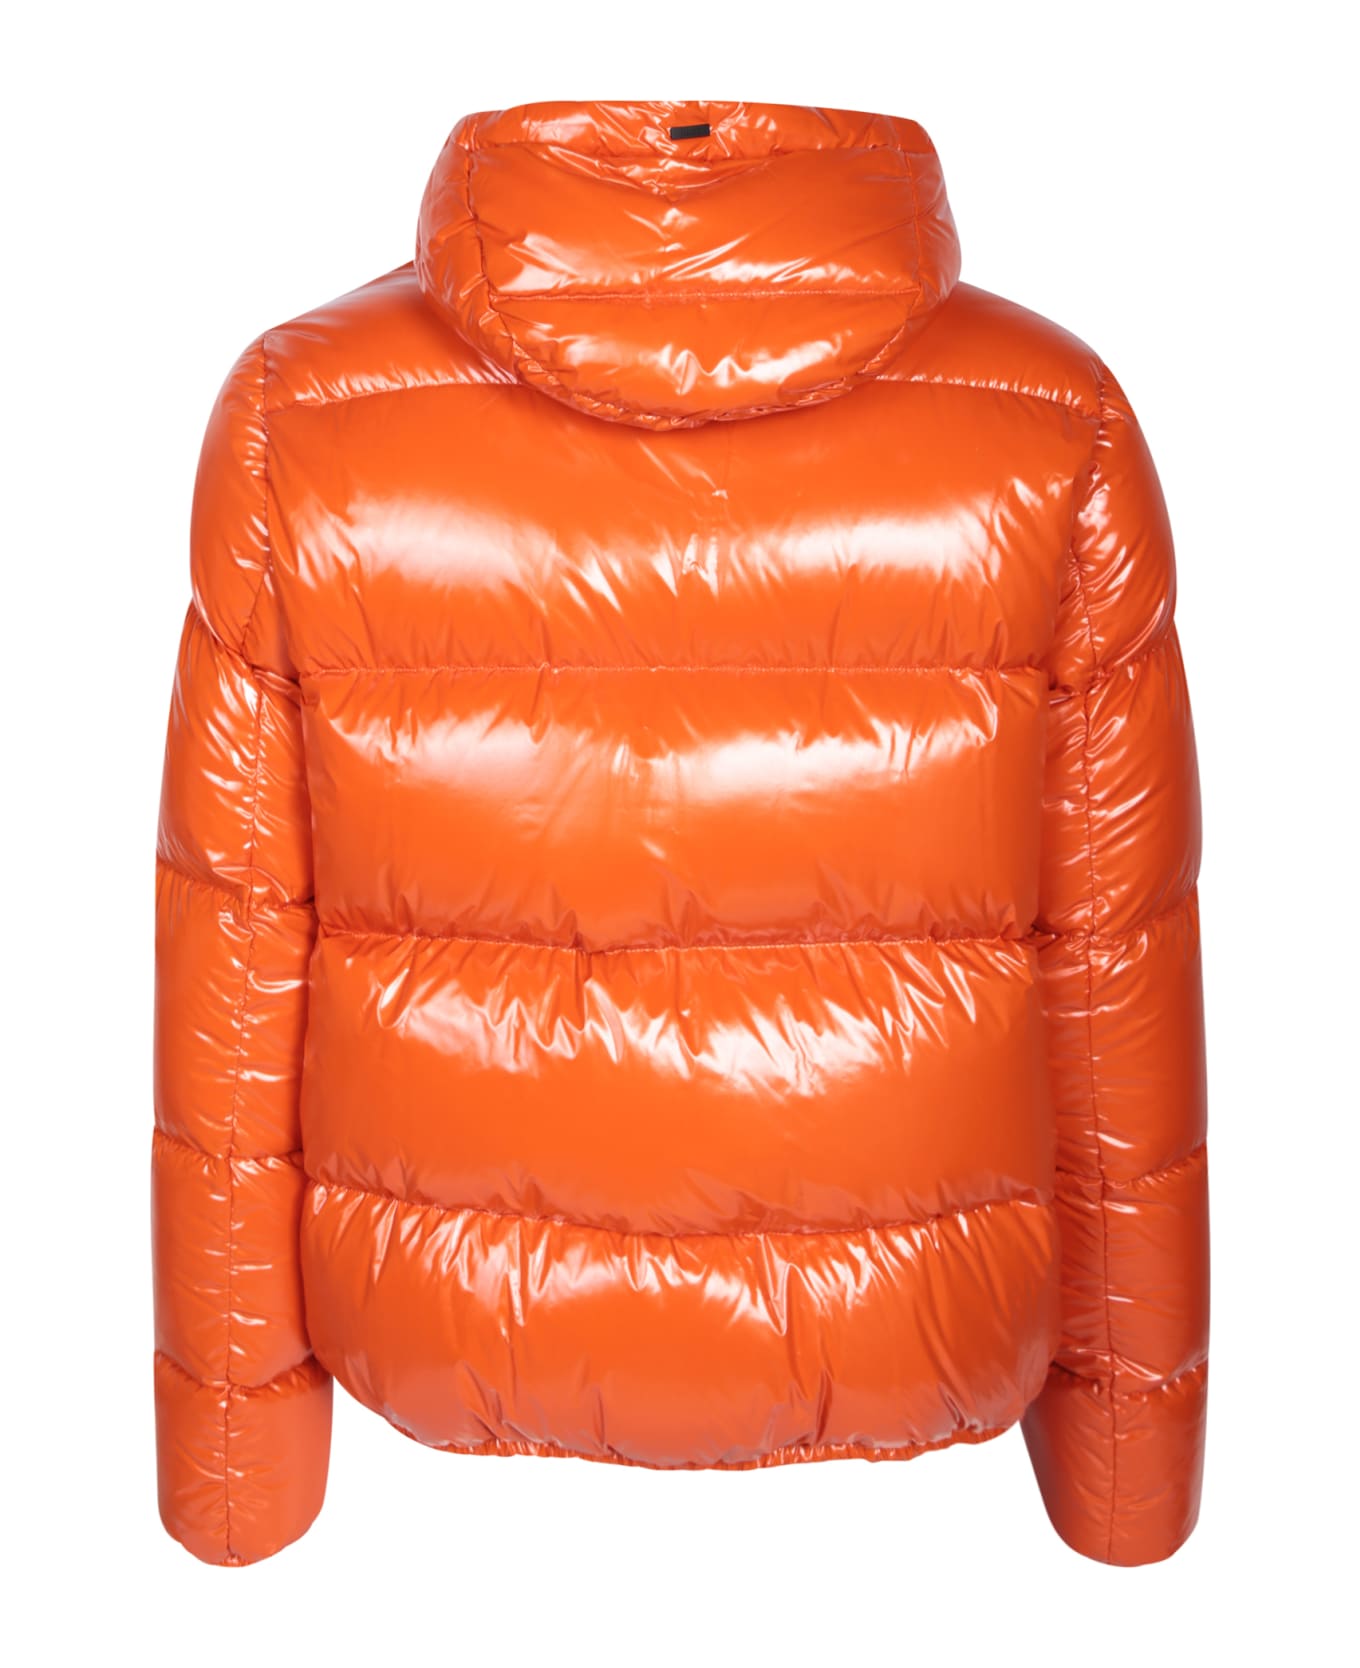 Herno Orange Gloss Bomber Jacket - Orange